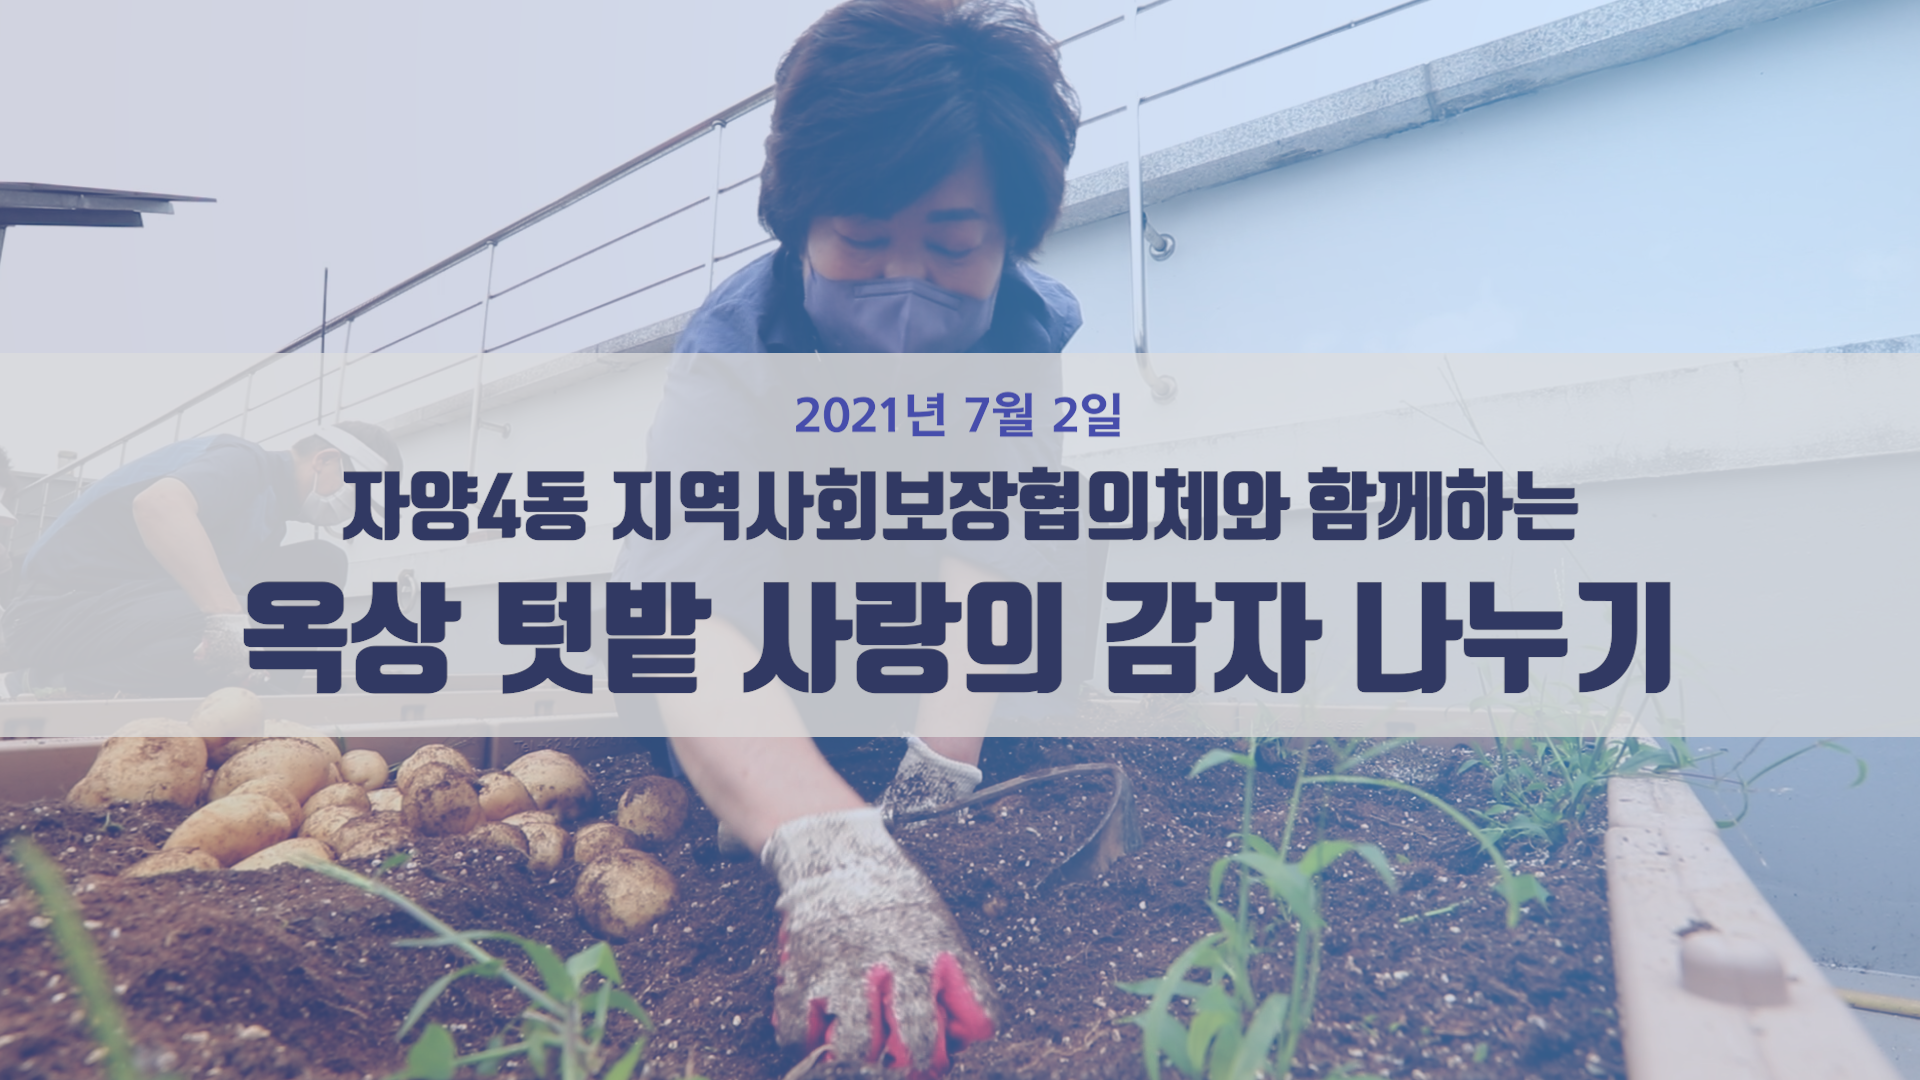 자양4동 지역사회보장협의체와 함께하는 옥상텃밭 사랑의 감자 나누기